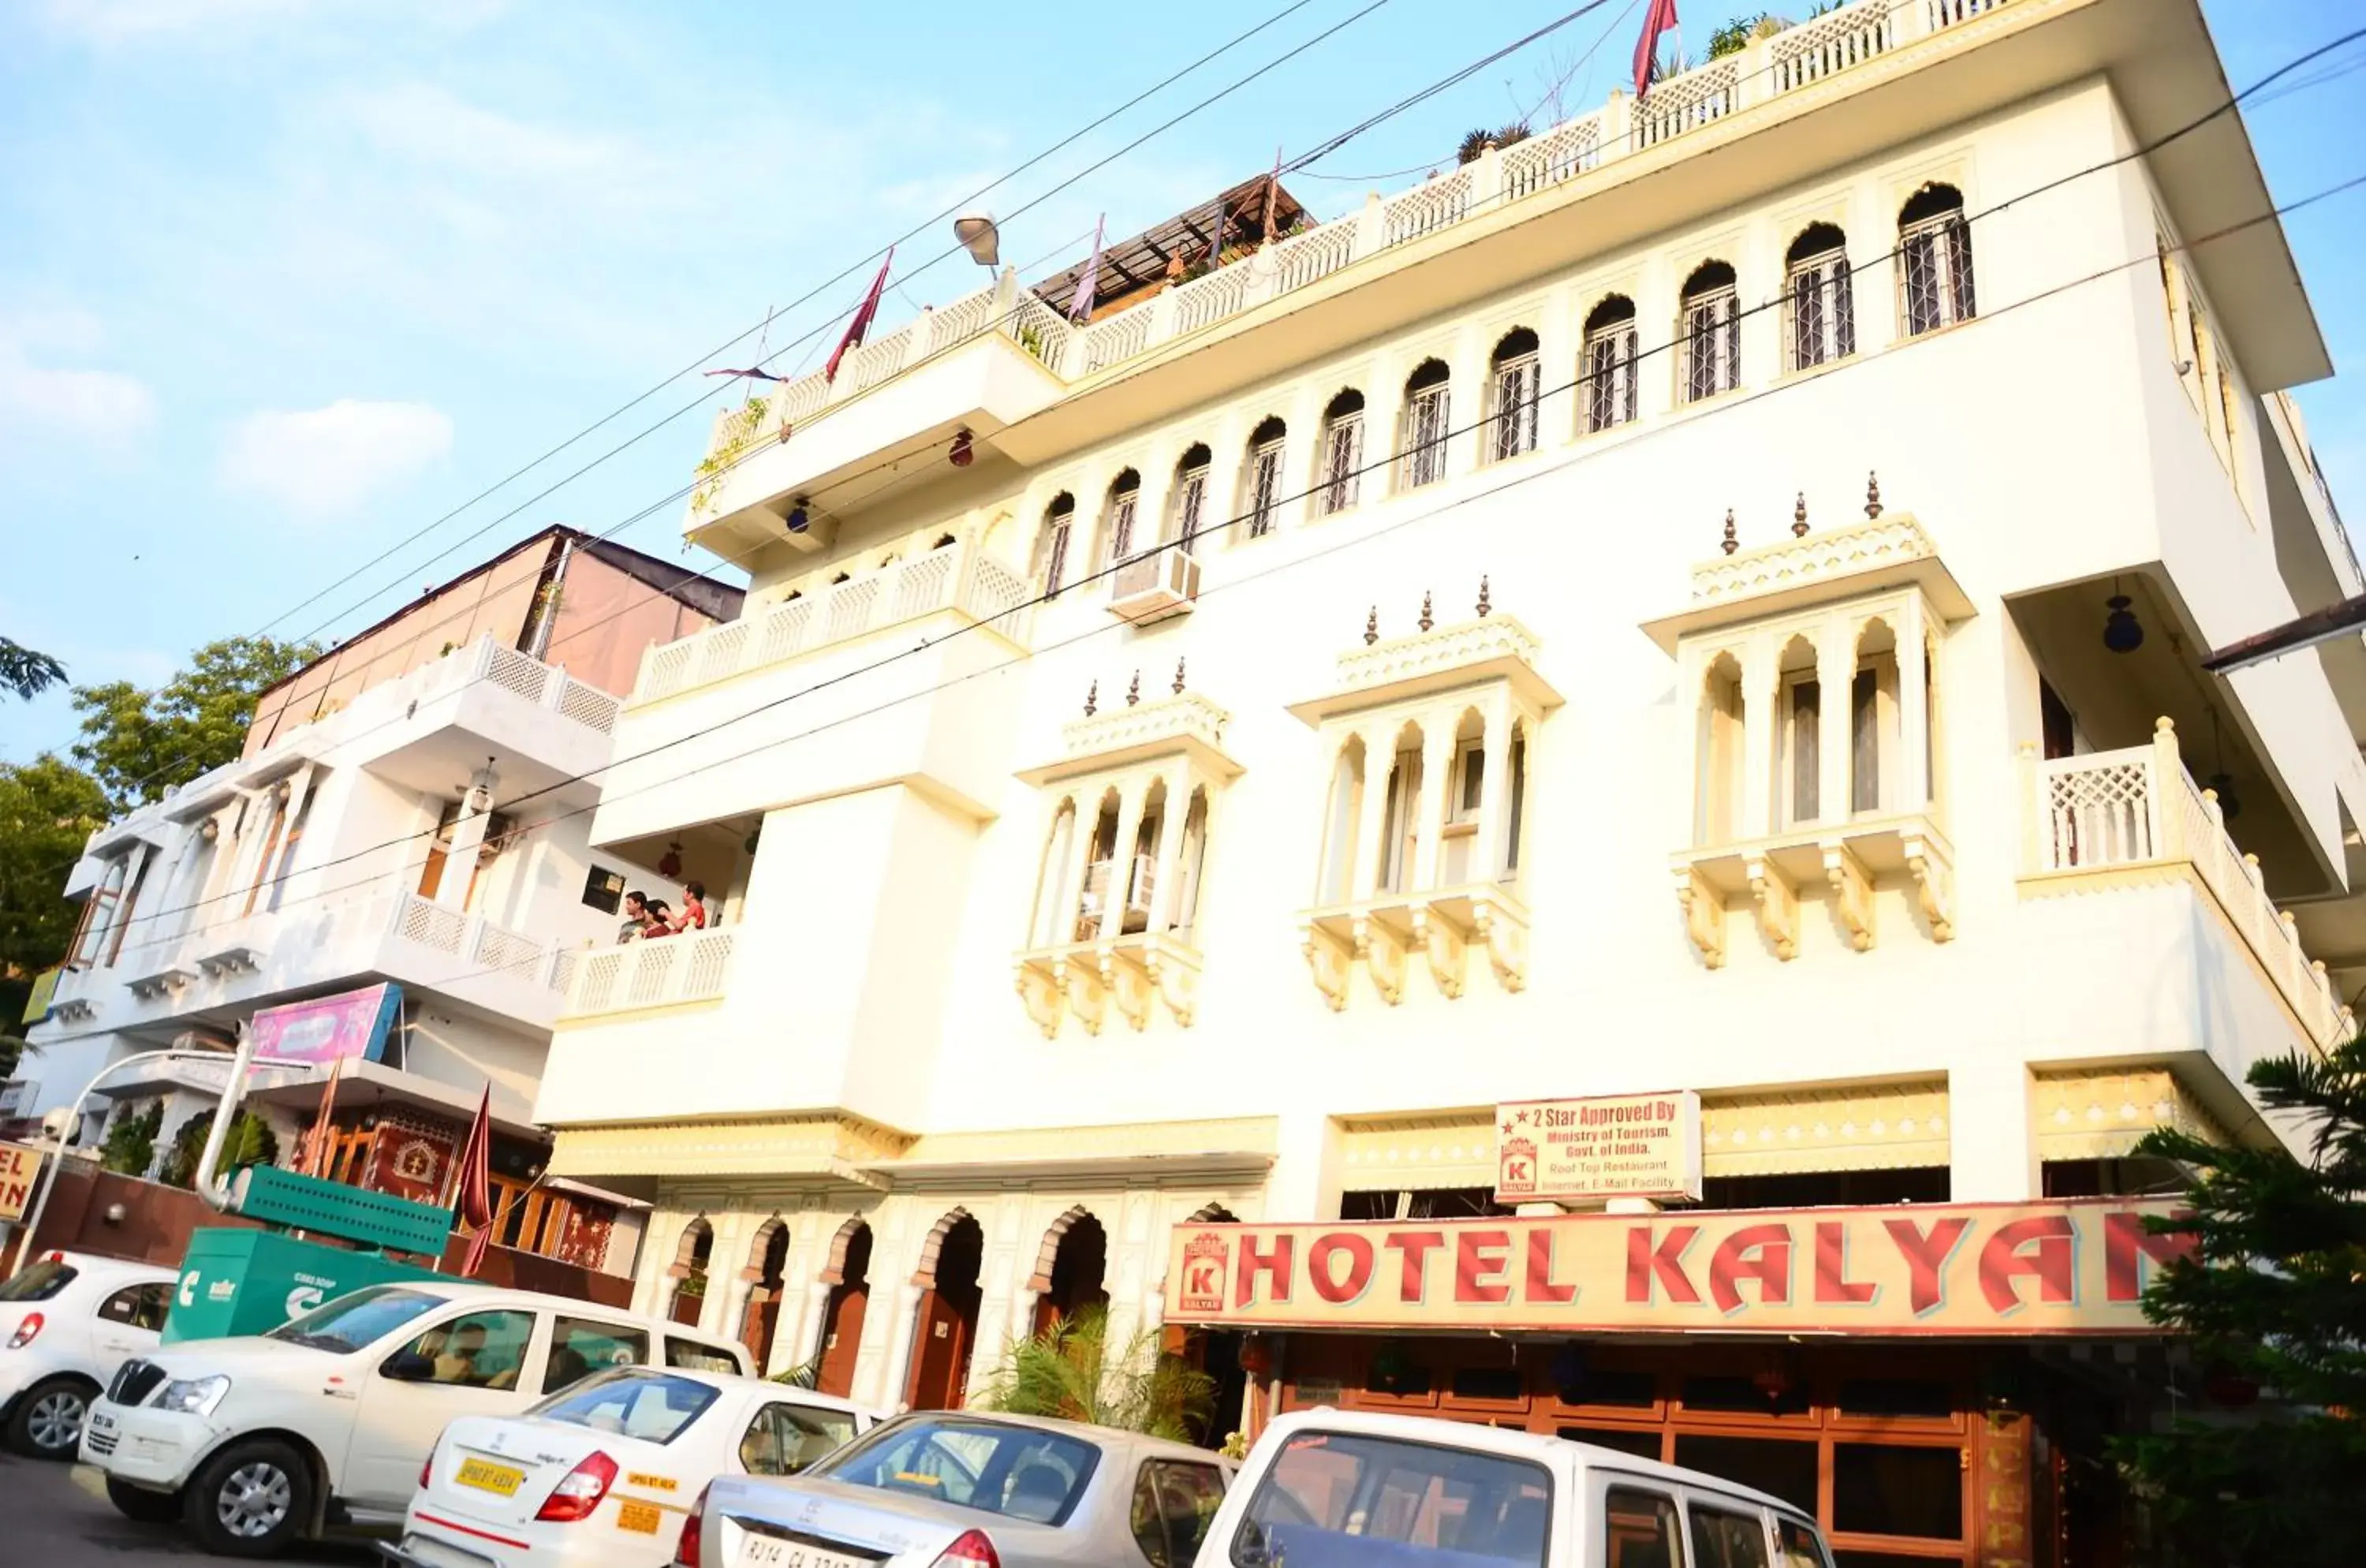 Facade/entrance, Property Building in Hotel Kalyan